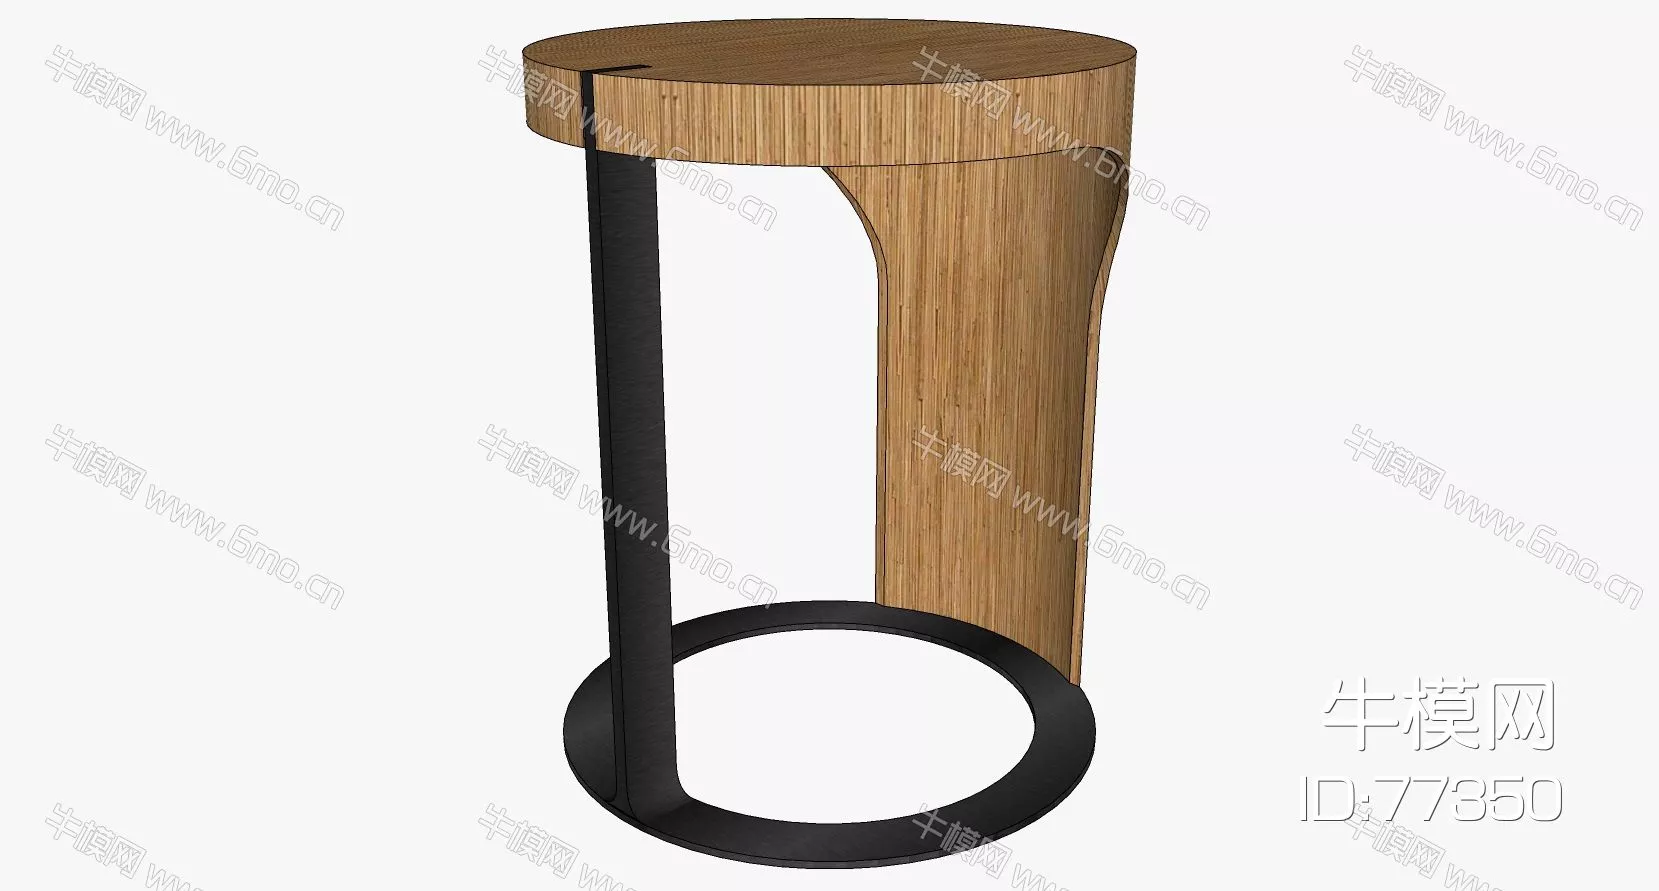 NORDIC SIDE TABLE - SKETCHUP 3D MODEL - ENSCAPE - 77350